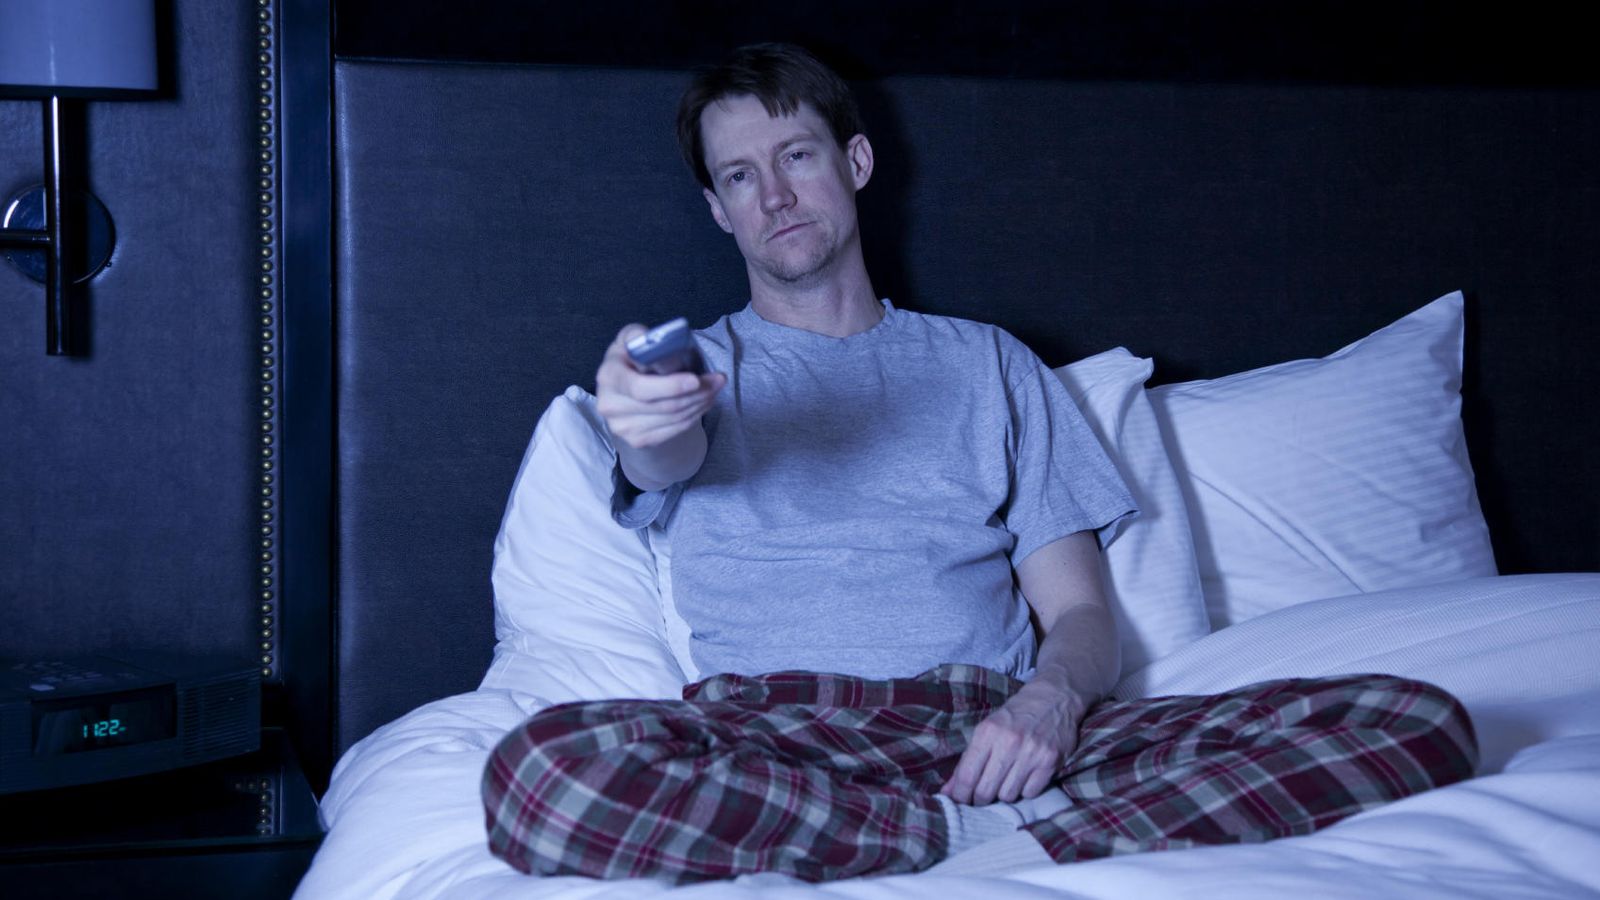 Foto: Los programas de teletienda que emiten de madrugada no siempre ayudan a conciliar el sueño. (iStock)